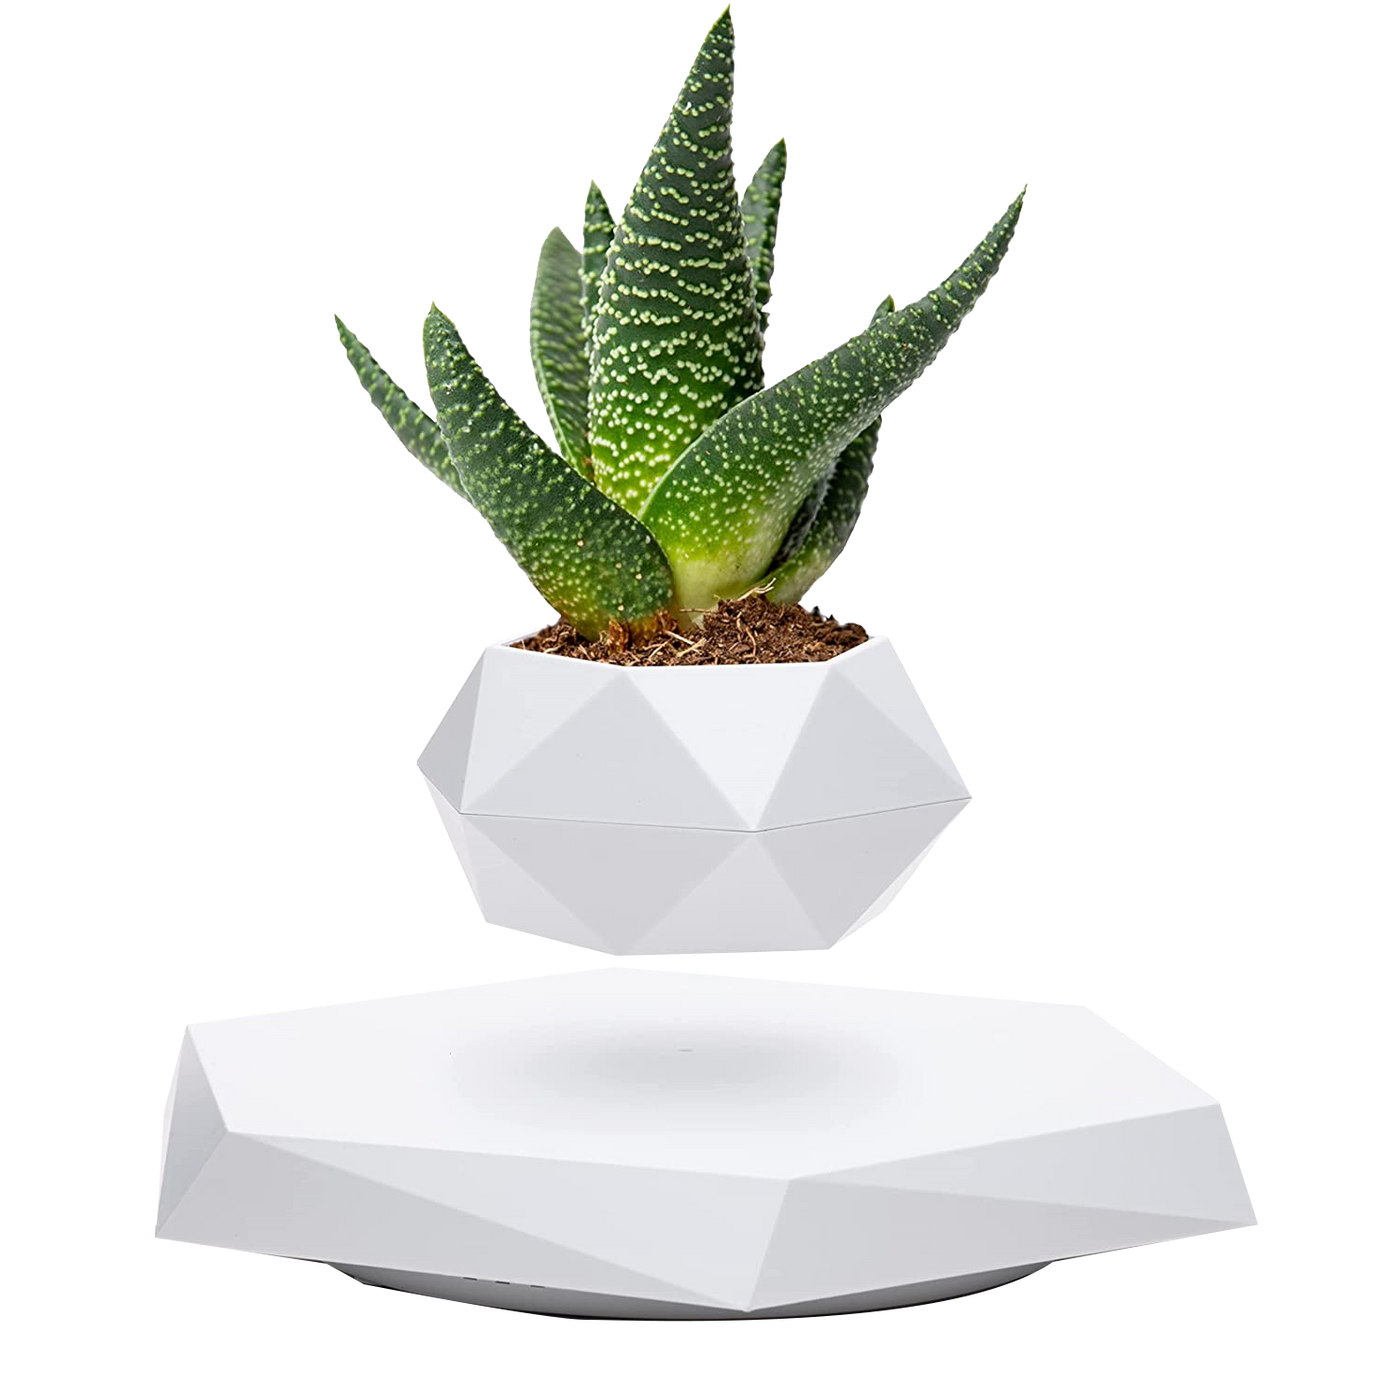 LANGTU Magnetschwebender Luft-Bonsai-Topf, schwimmender Blumentopf, drehbarer Topfpflanzer für Zuhause, Büro und Schreibtischdekoration, weiß